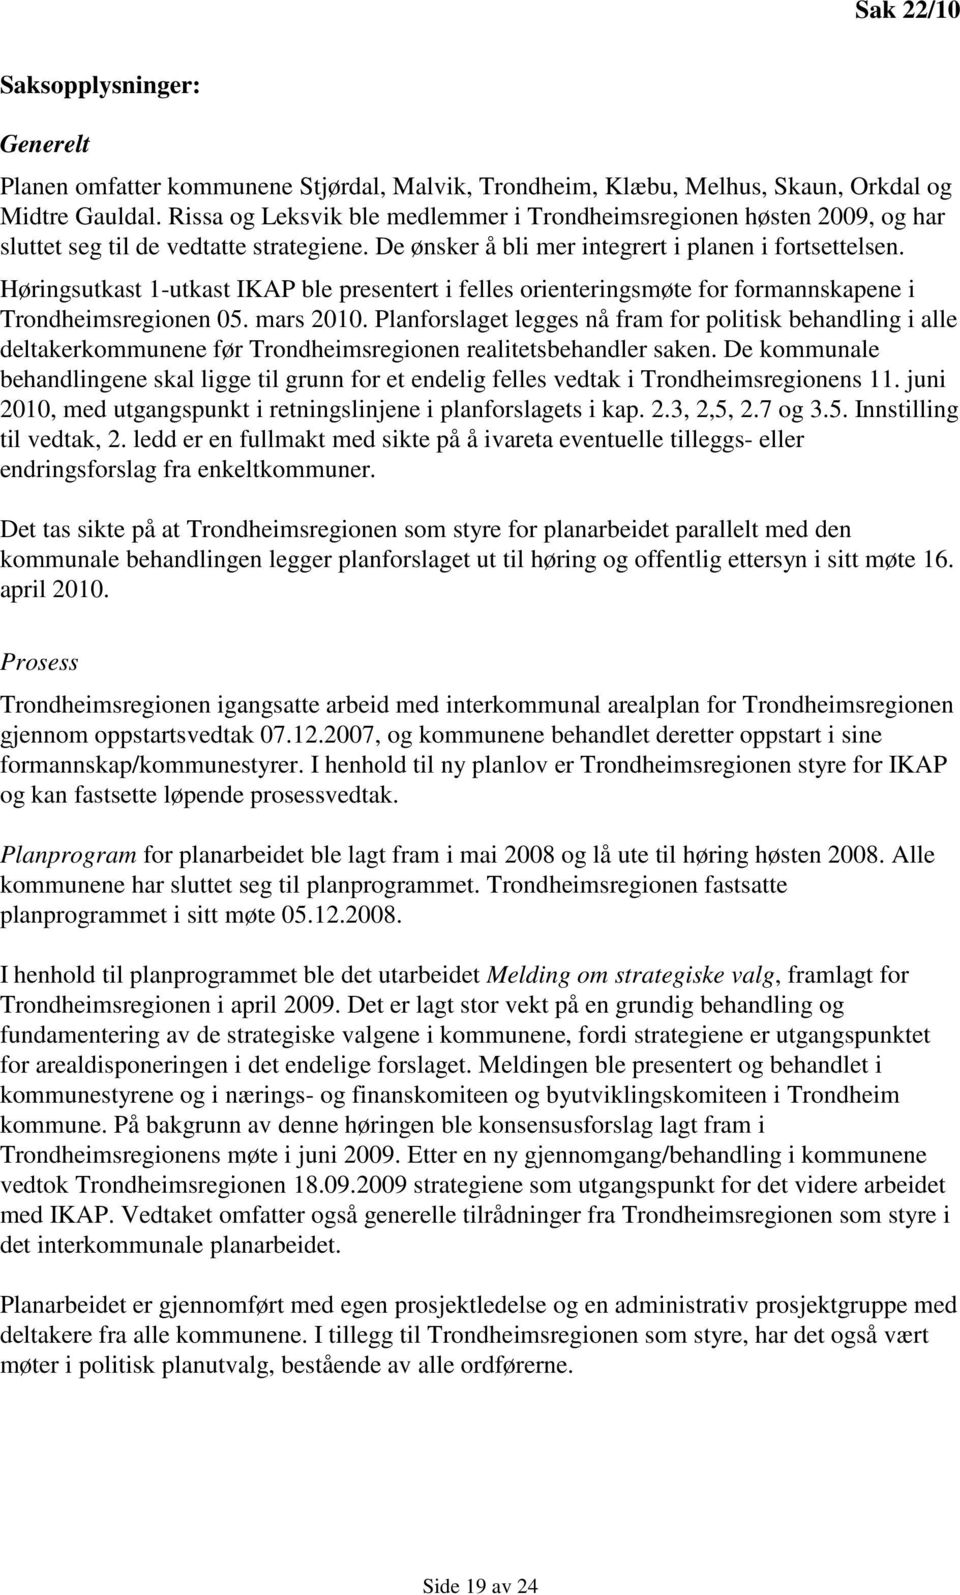 Høringsutkast 1-utkast IKAP ble presentert i felles orienteringsmøte for formannskapene i Trondheimsregionen 05. mars 2010.